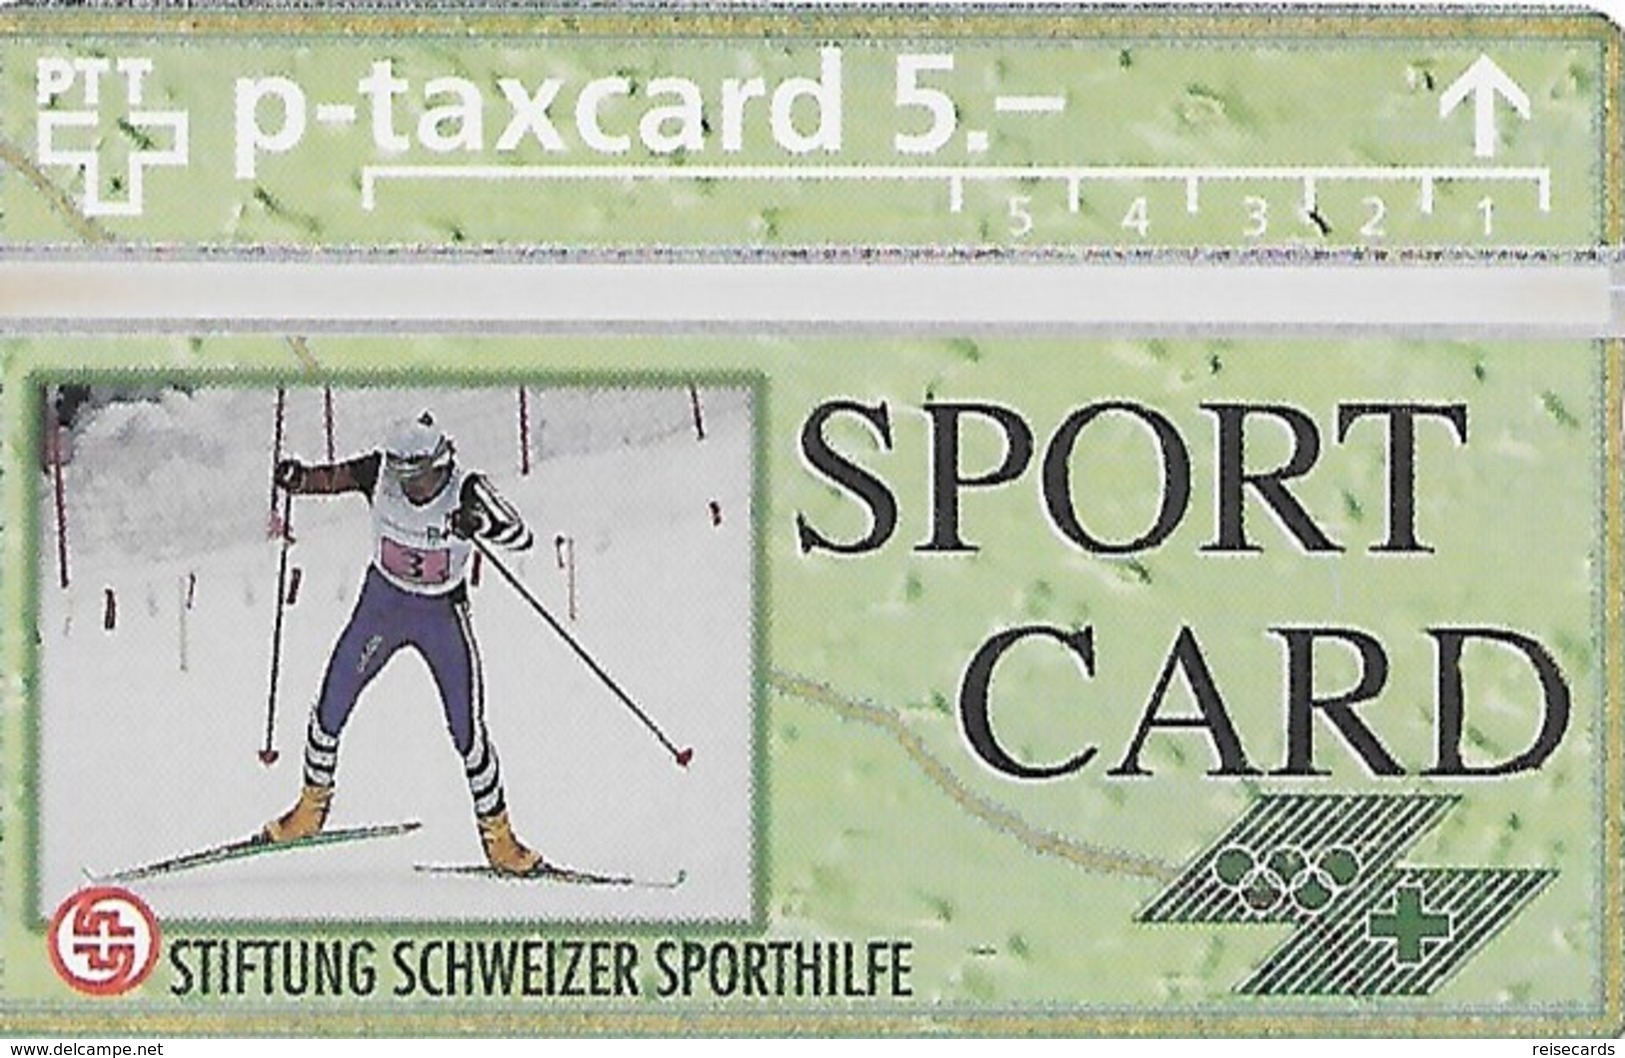 PTT-p: KP-93/56K 405L Stiftung Schweizer Sporthilfe - Sportcard Ski Nordisch - Schweiz